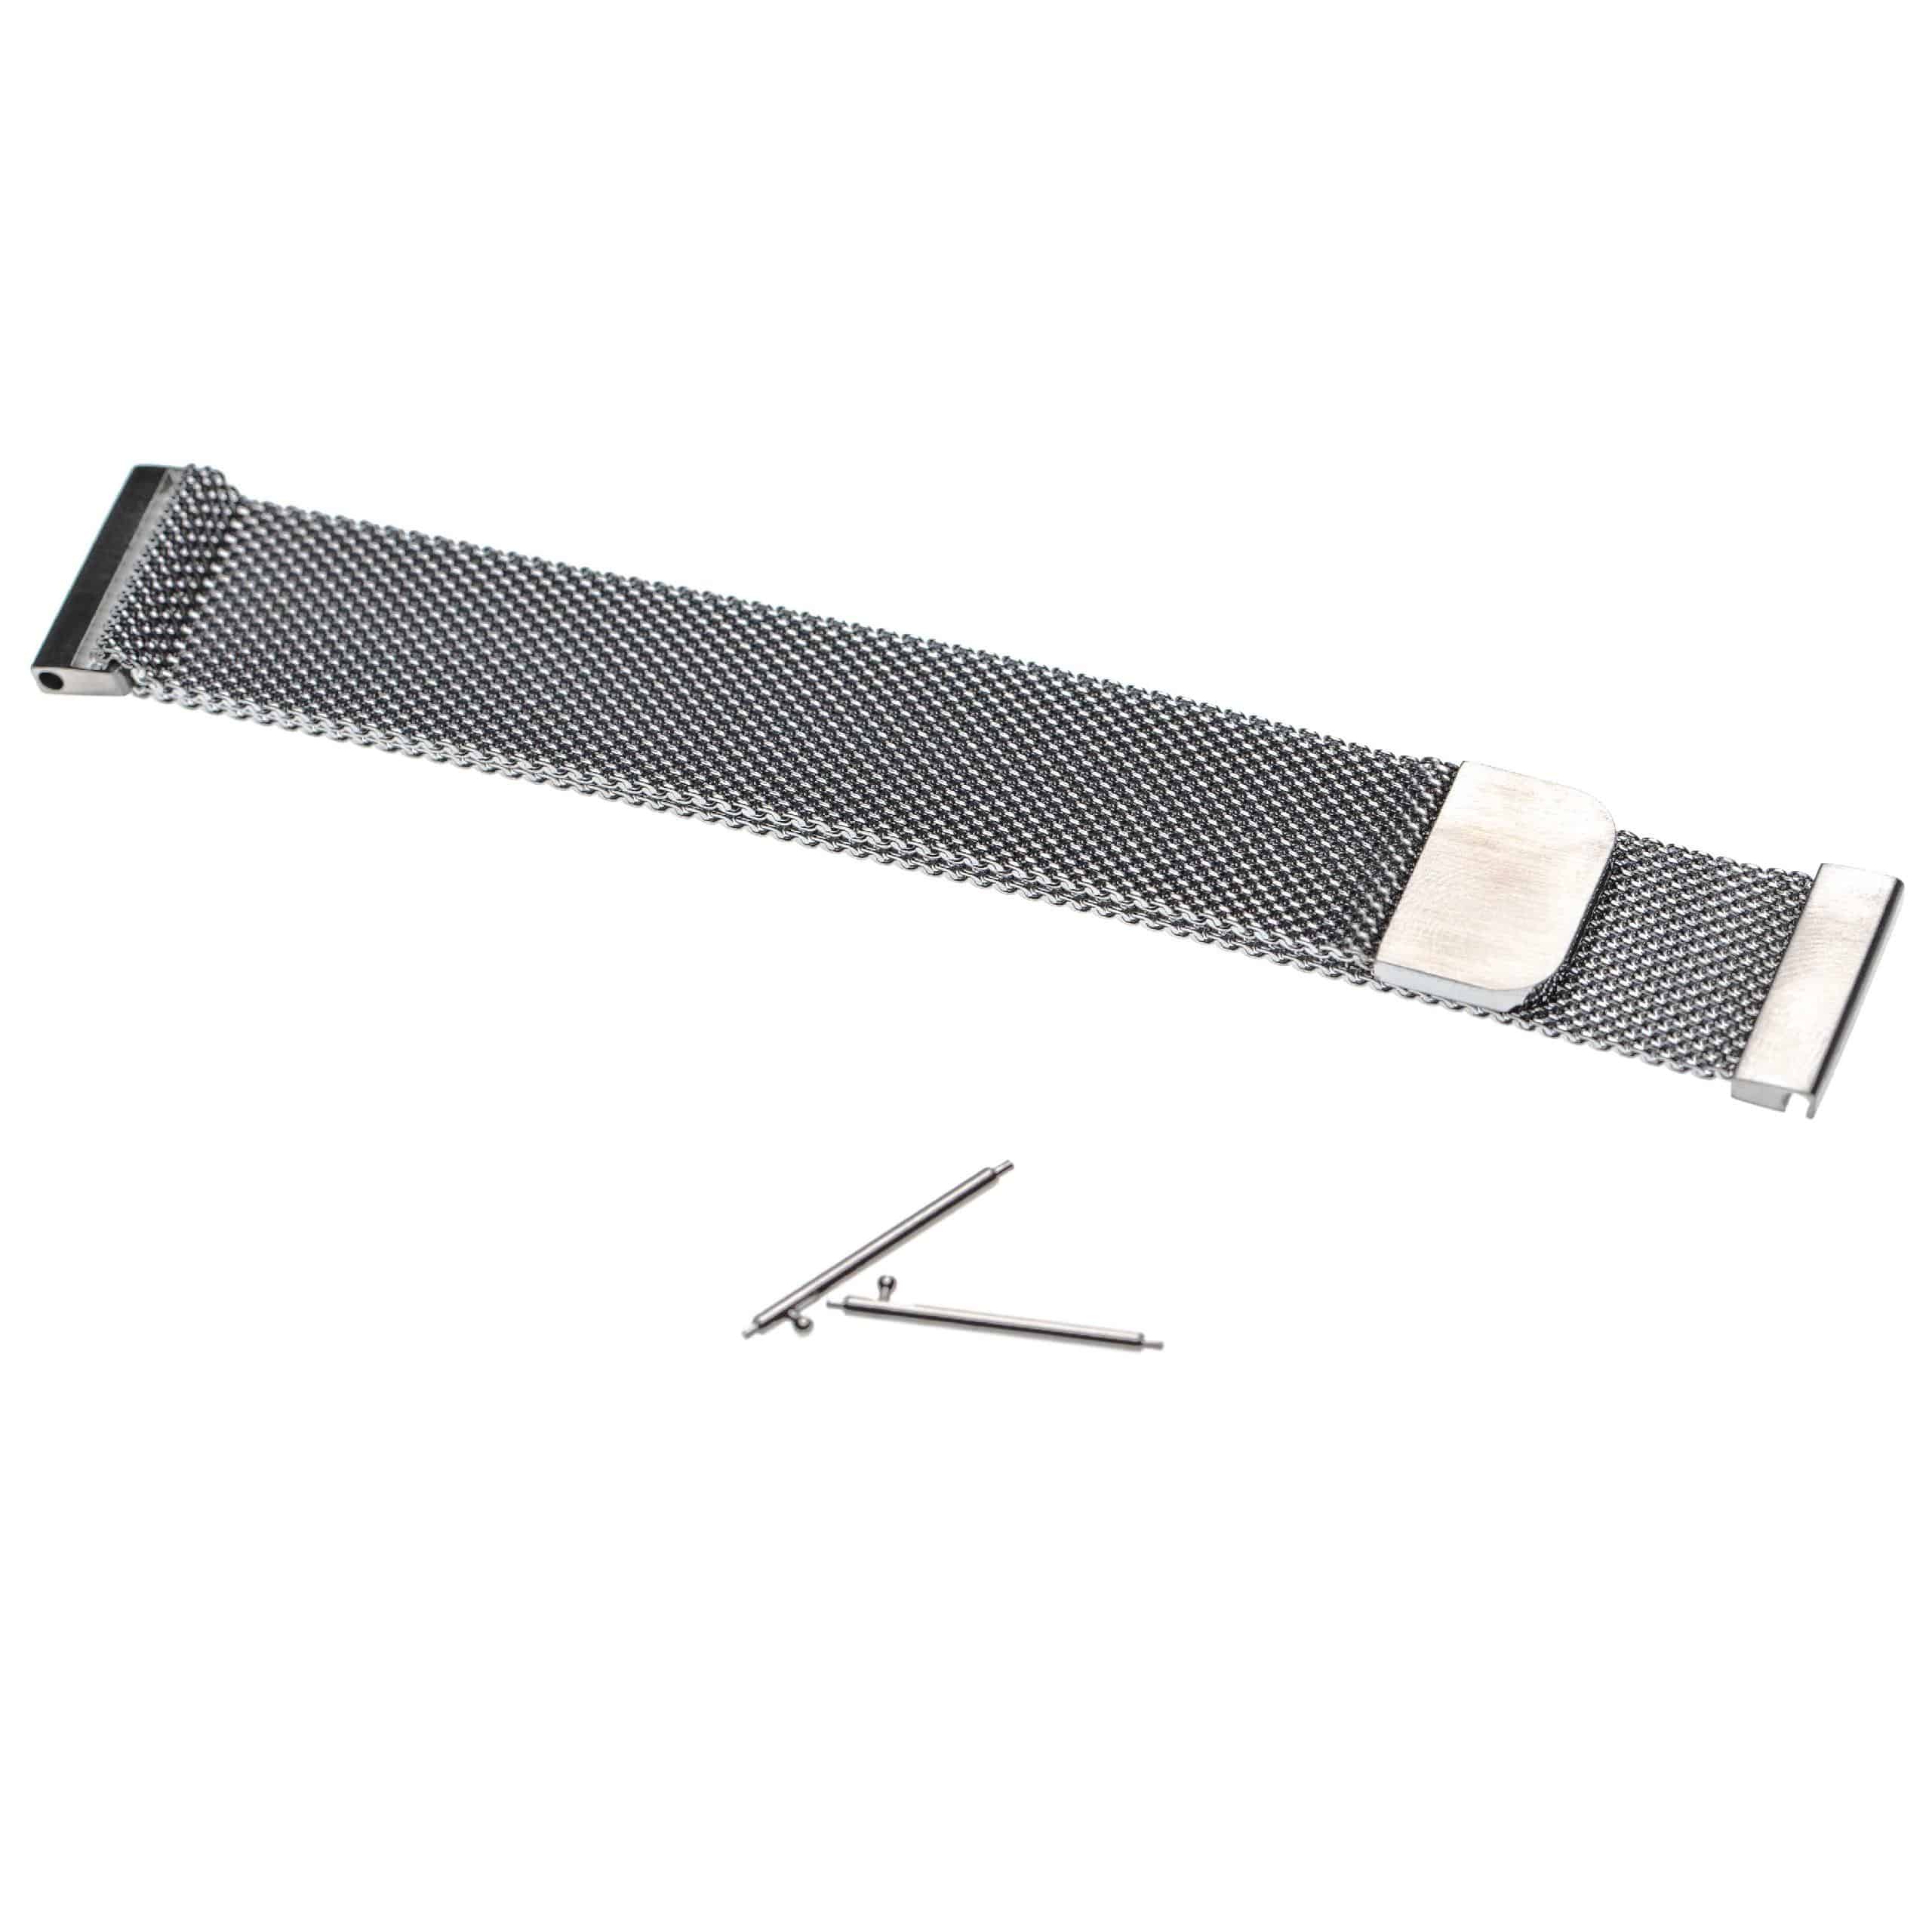 cinturino per Garmin Forerunner Smartwatch - fino a 191 mm circonferenza del polso, acciaio inox, argento